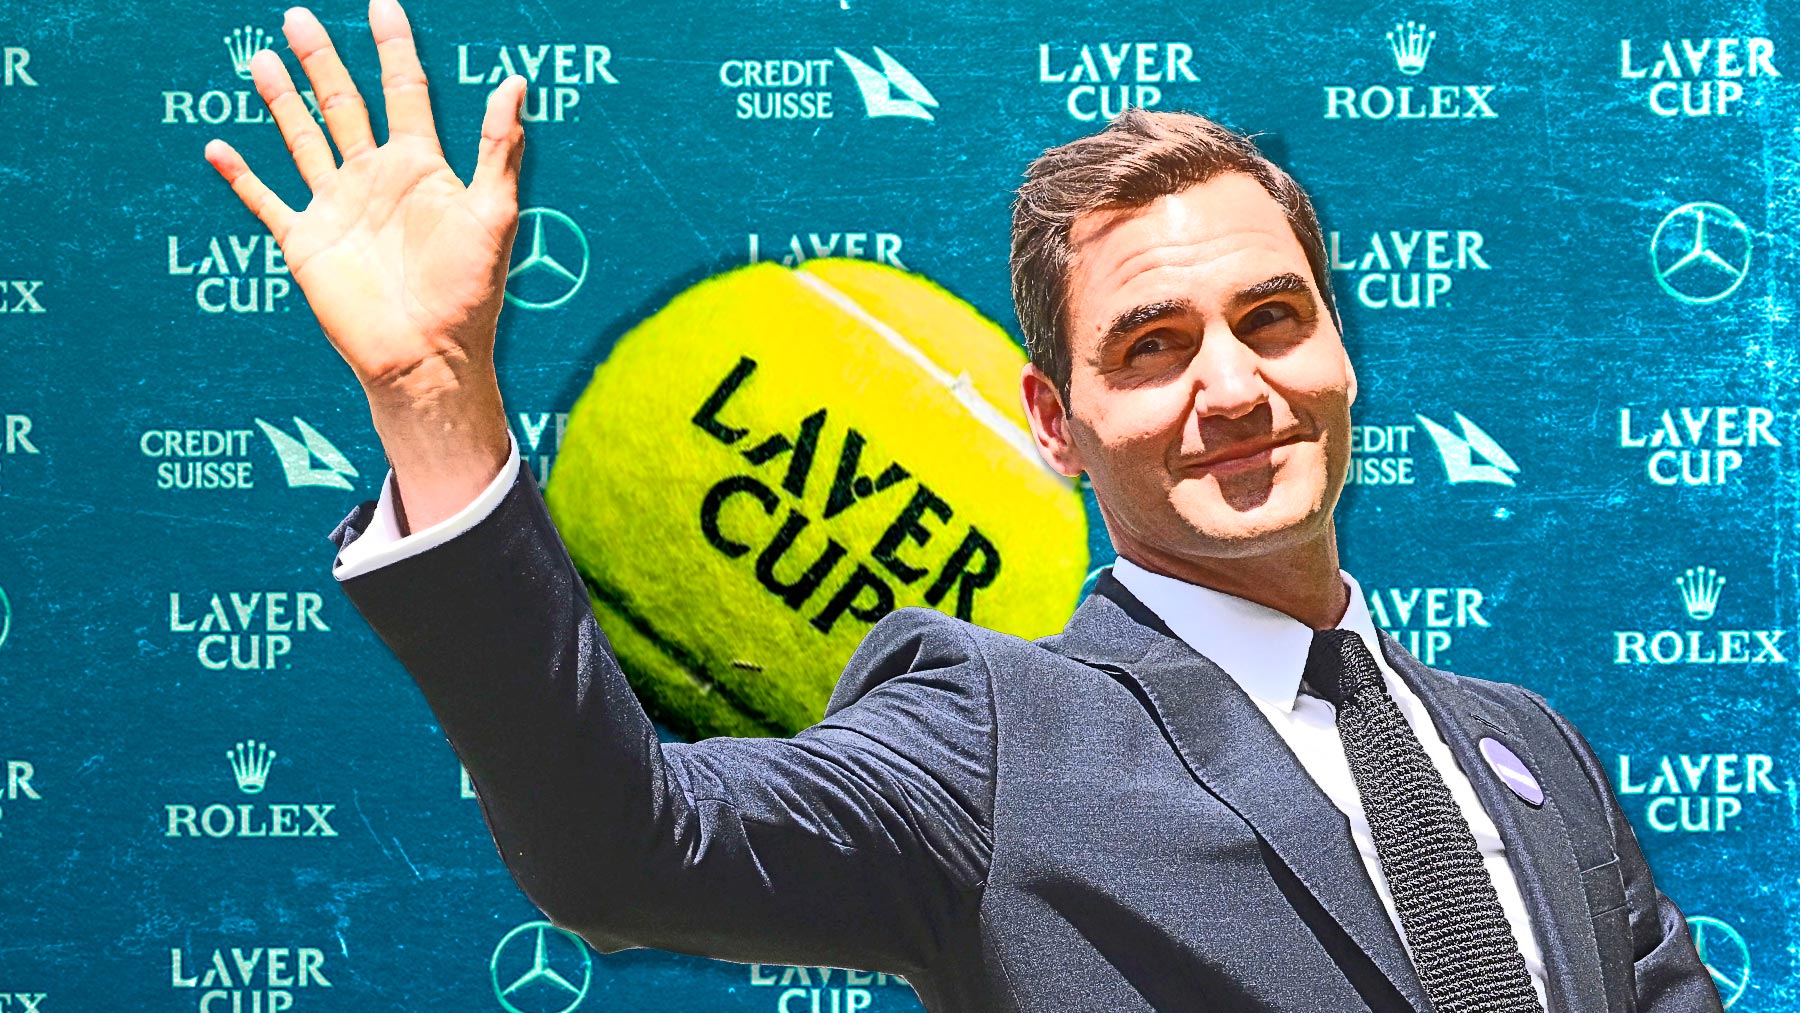 La despedida de Federer desata la locura en Londres: entradas de 1.000 a 54.000 euros